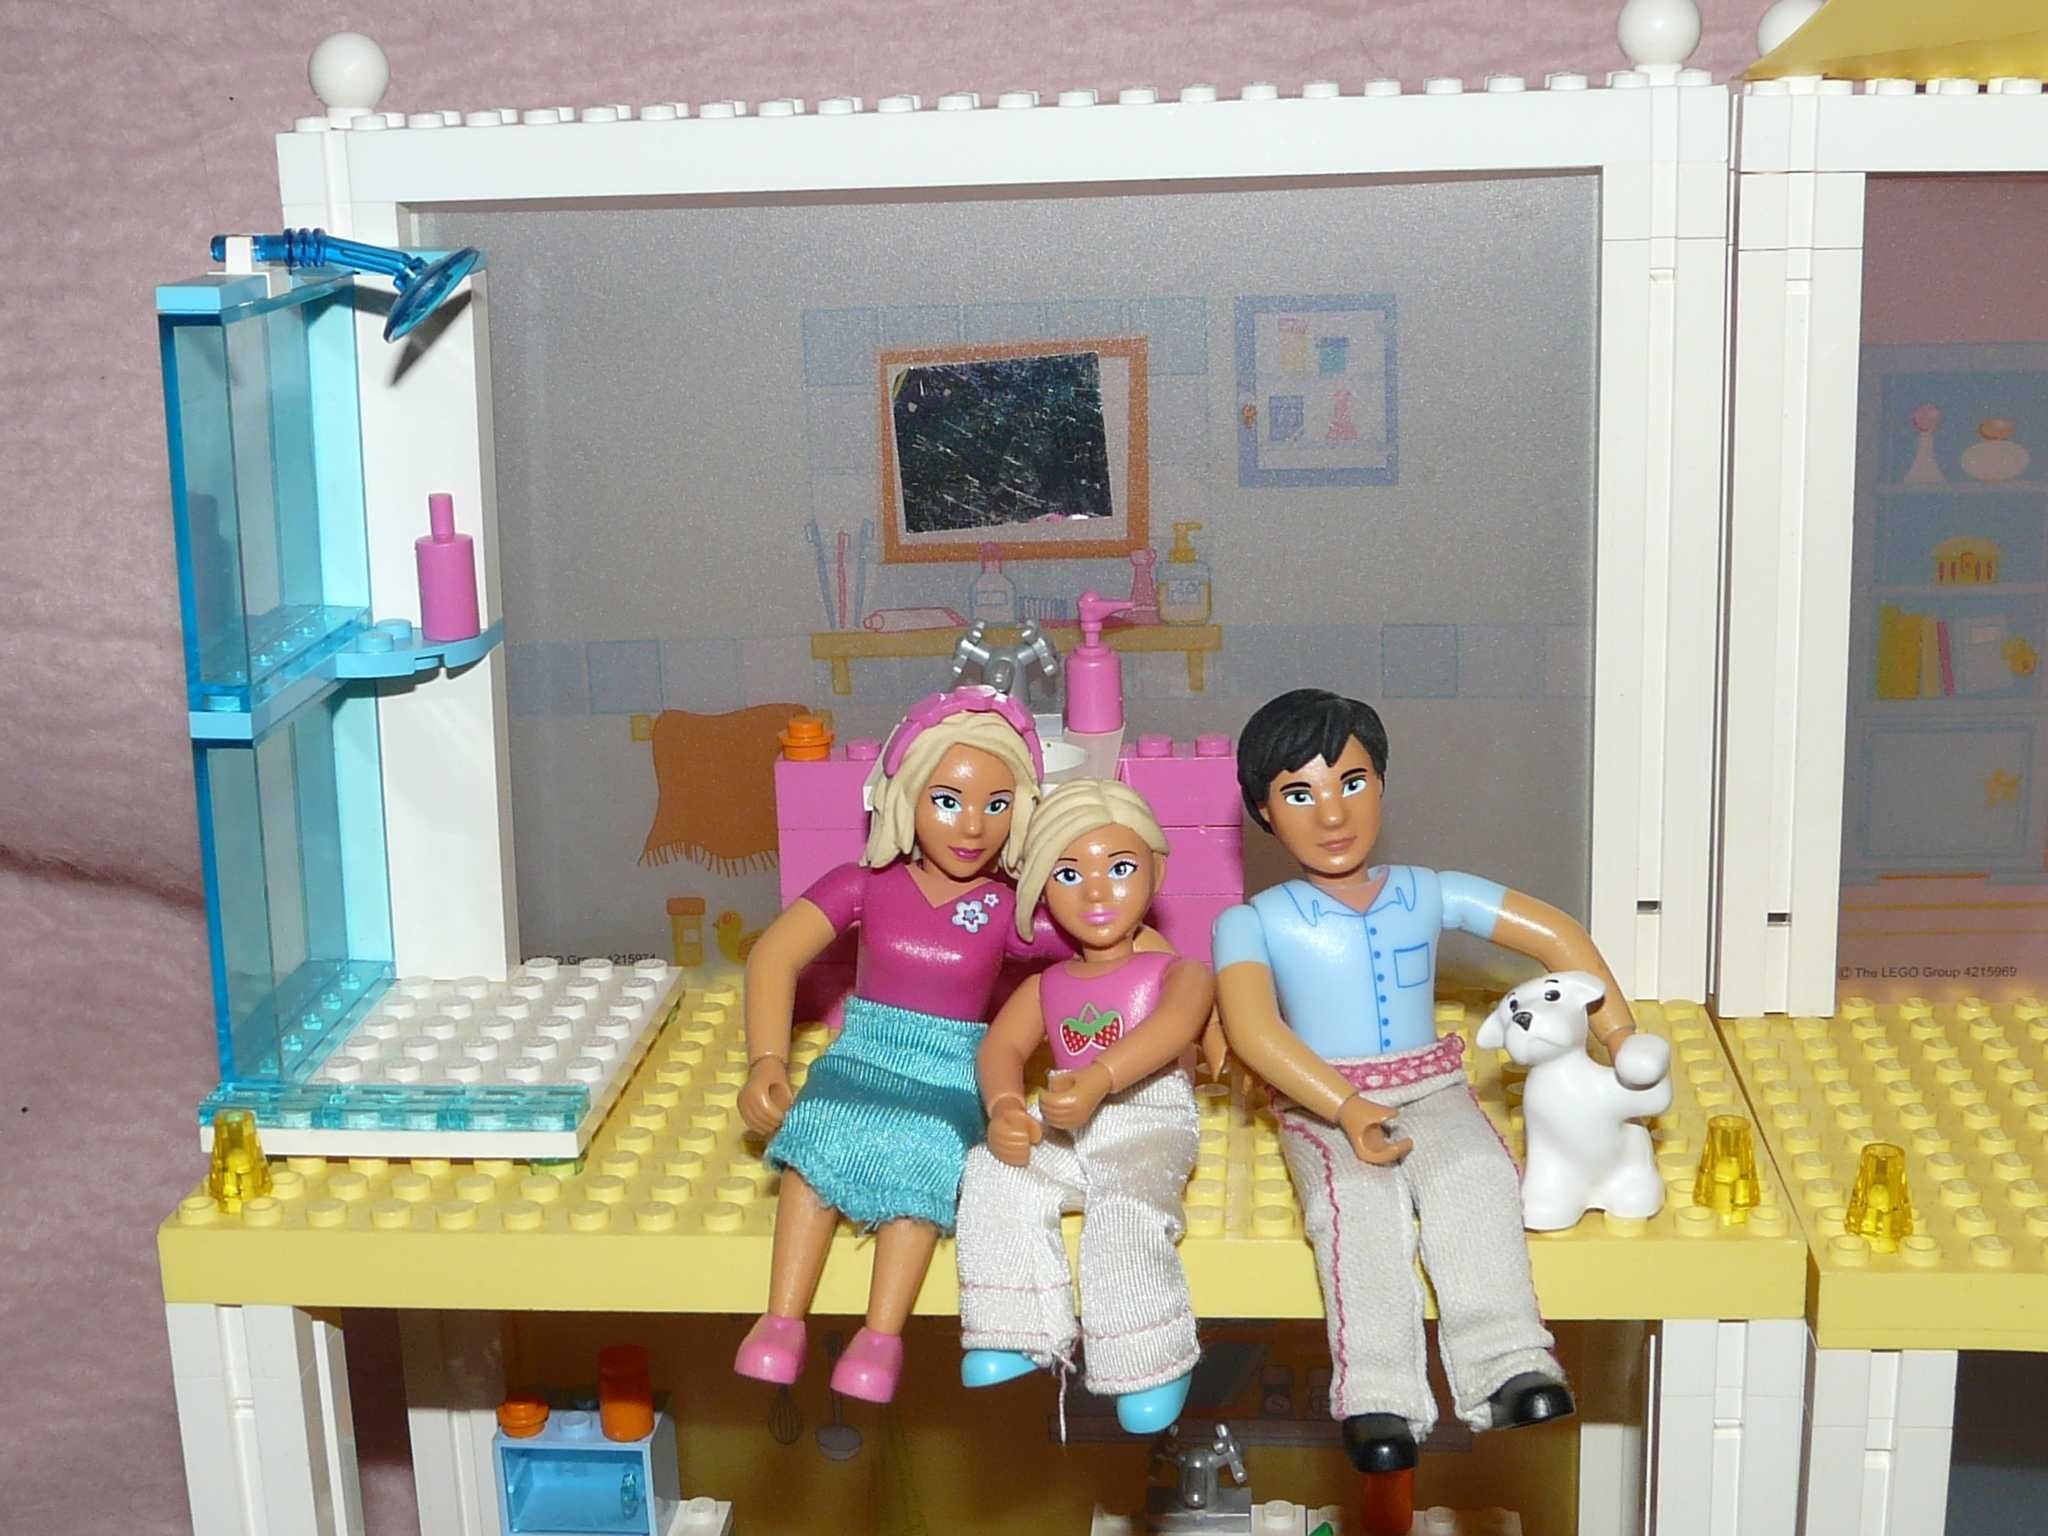 Lego belville friends duży piętrowy rodzinny Domek dla lalek